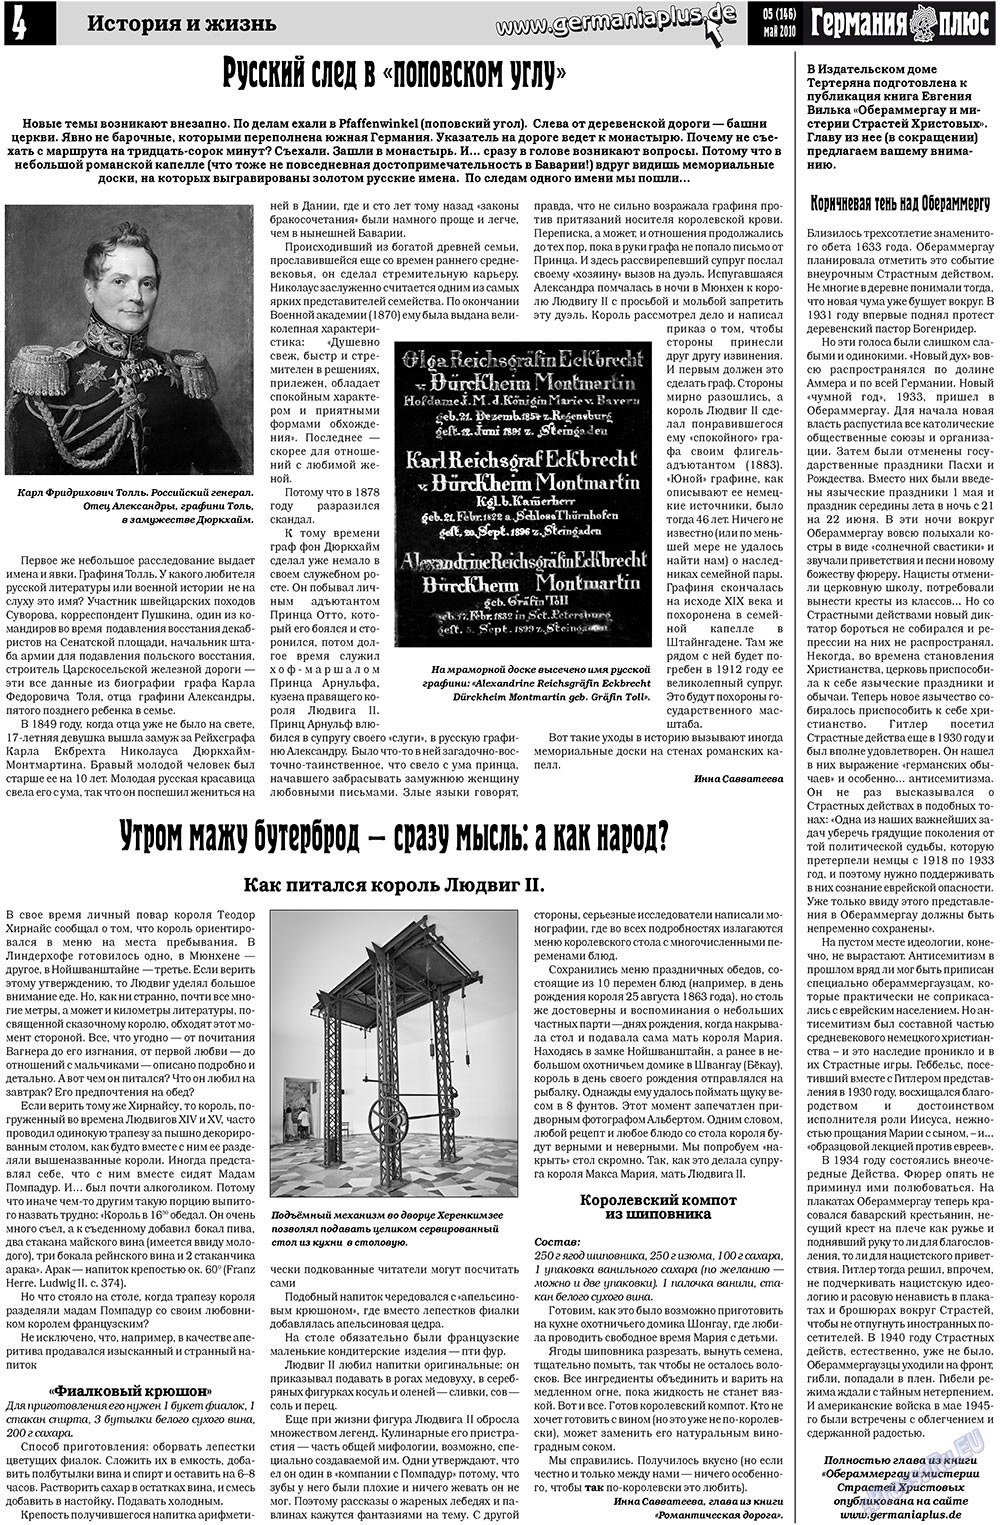 Германия плюс (газета). 2010 год, номер 5, стр. 4